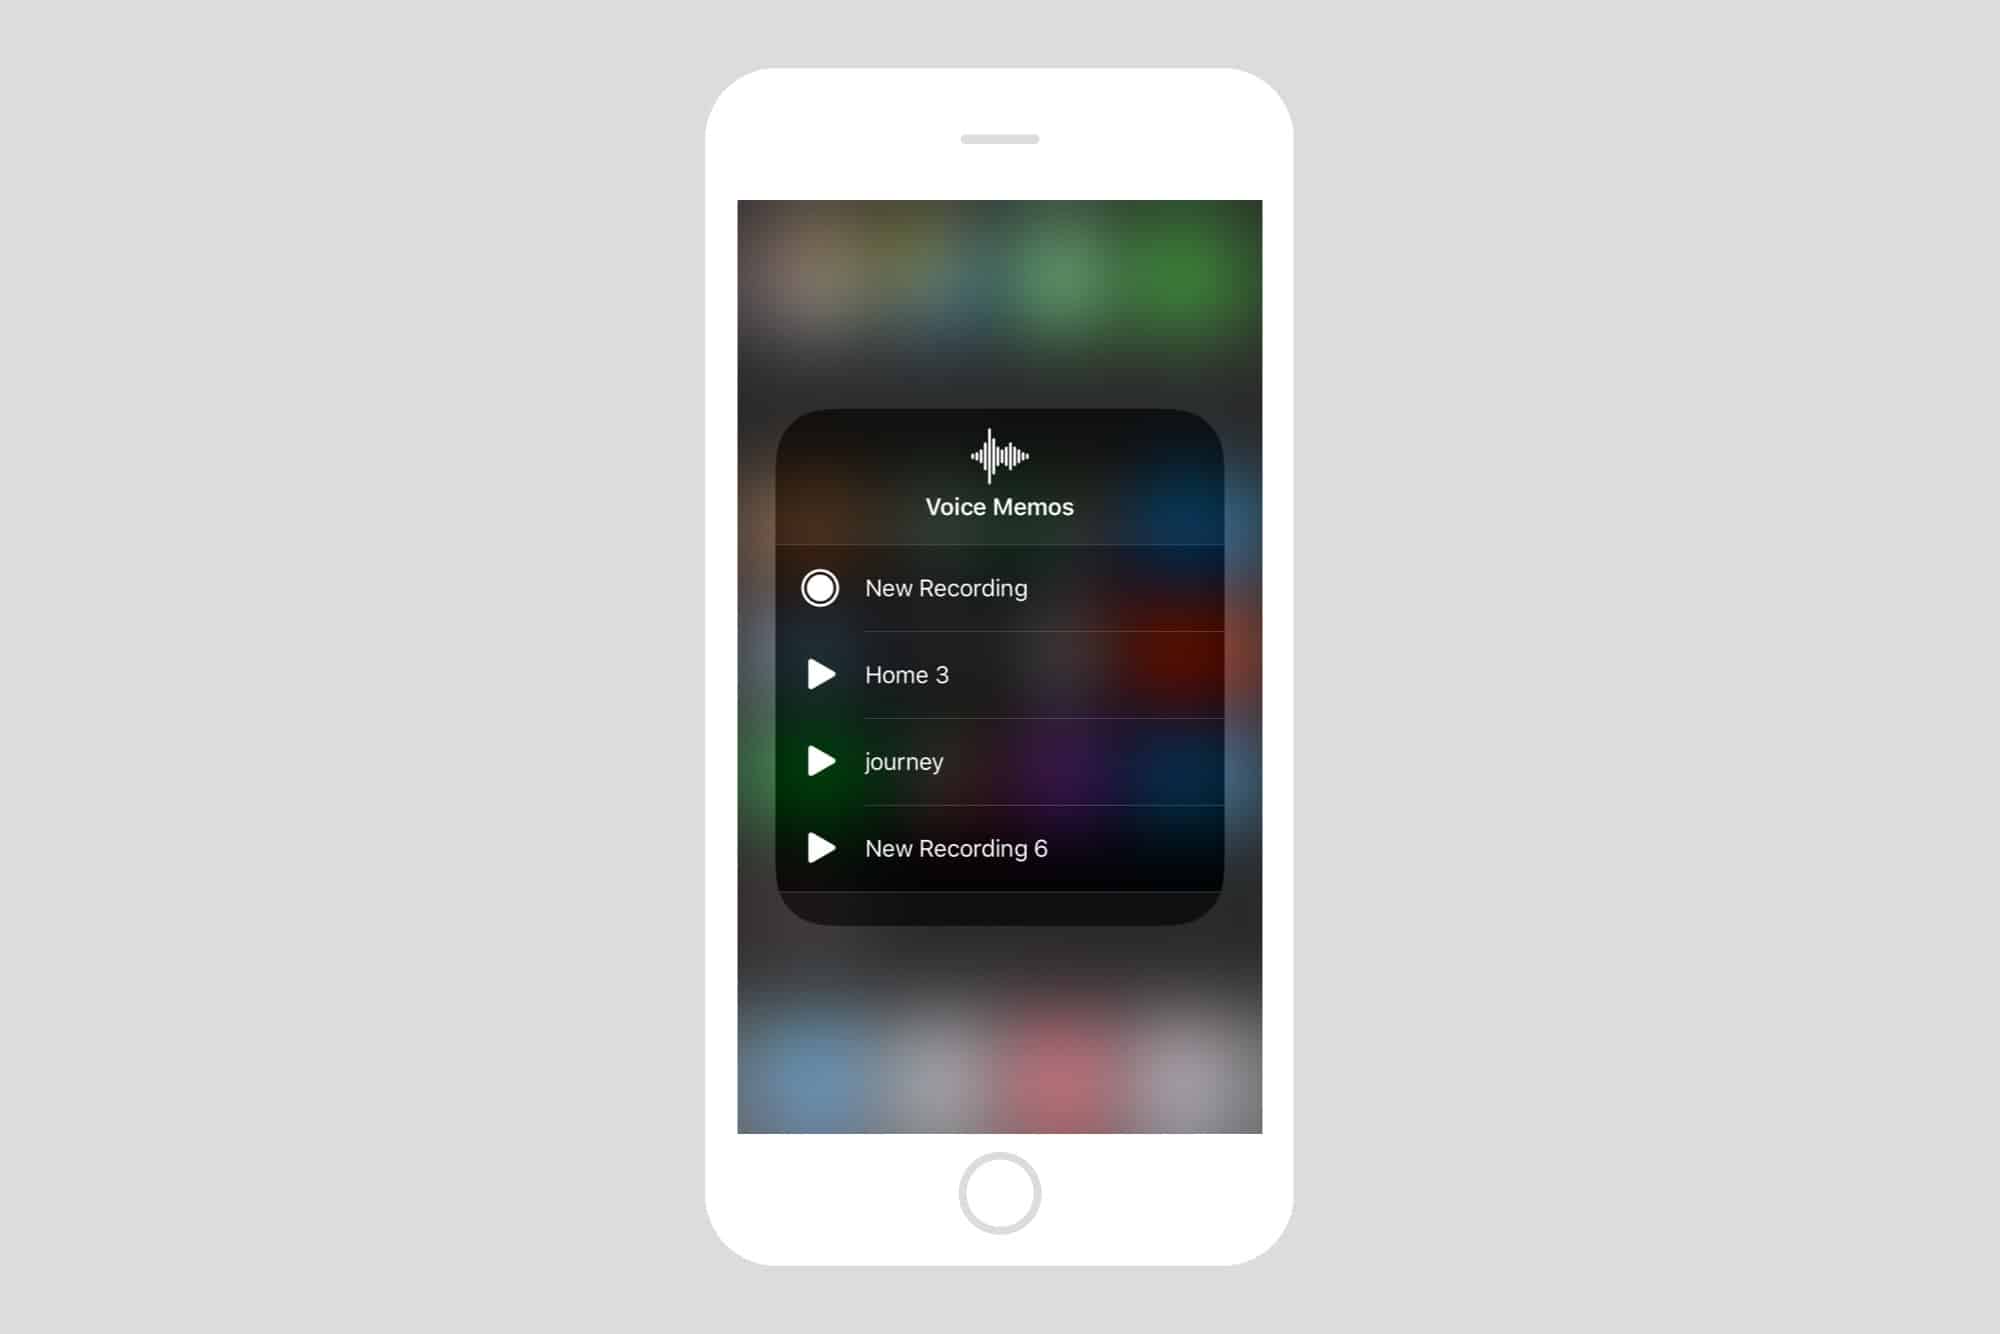 The Control Center widget for Voice Memos in iOS 12.